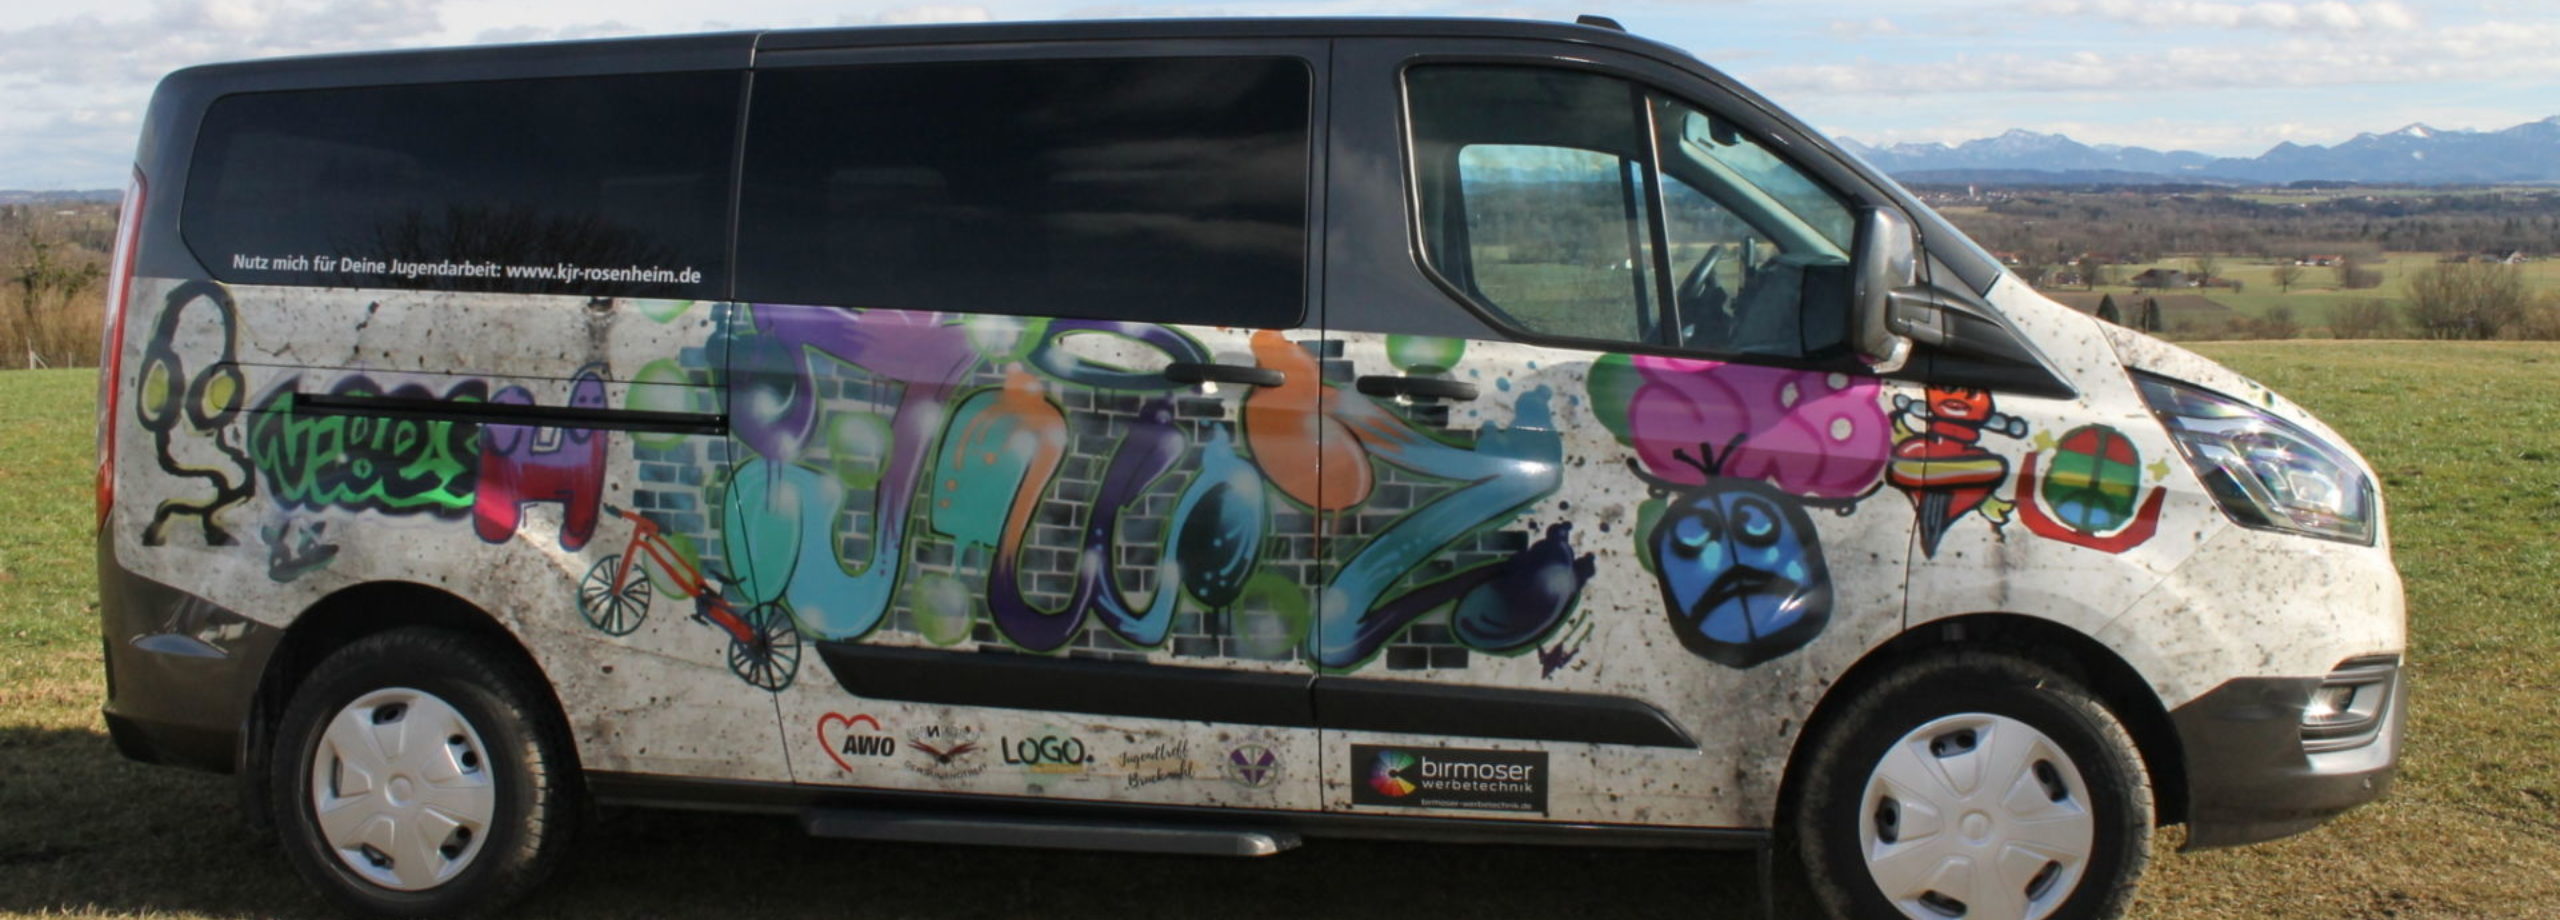 Kleinbus Graffiti 1